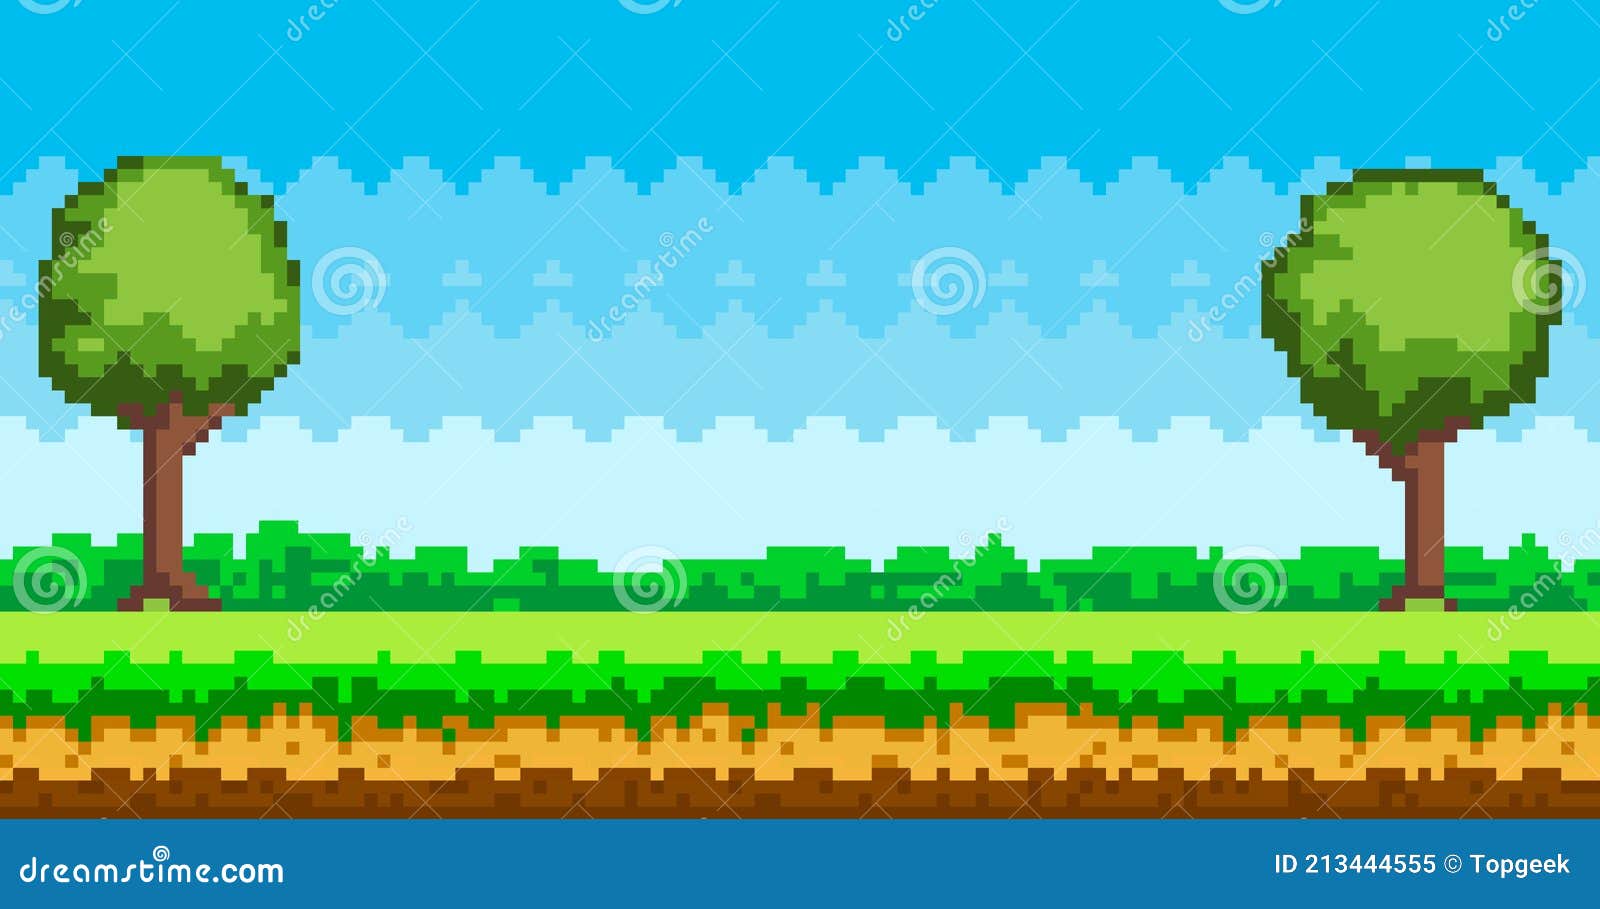 Thưởng thức cảnh trò chơi nghệ thuật Pixel với hình nền Pixel Game tuyệt đẹp. Cùng đi trên mỗi cung đường, cỏ xanh tung bay trong gió, lướt qua màn hình, mang lại cho bạn cảm giác thoải mái và đầy sảng khoái. Khám phá và sở hữu ngay những hình nền đáng yêu này ngay hôm nay.